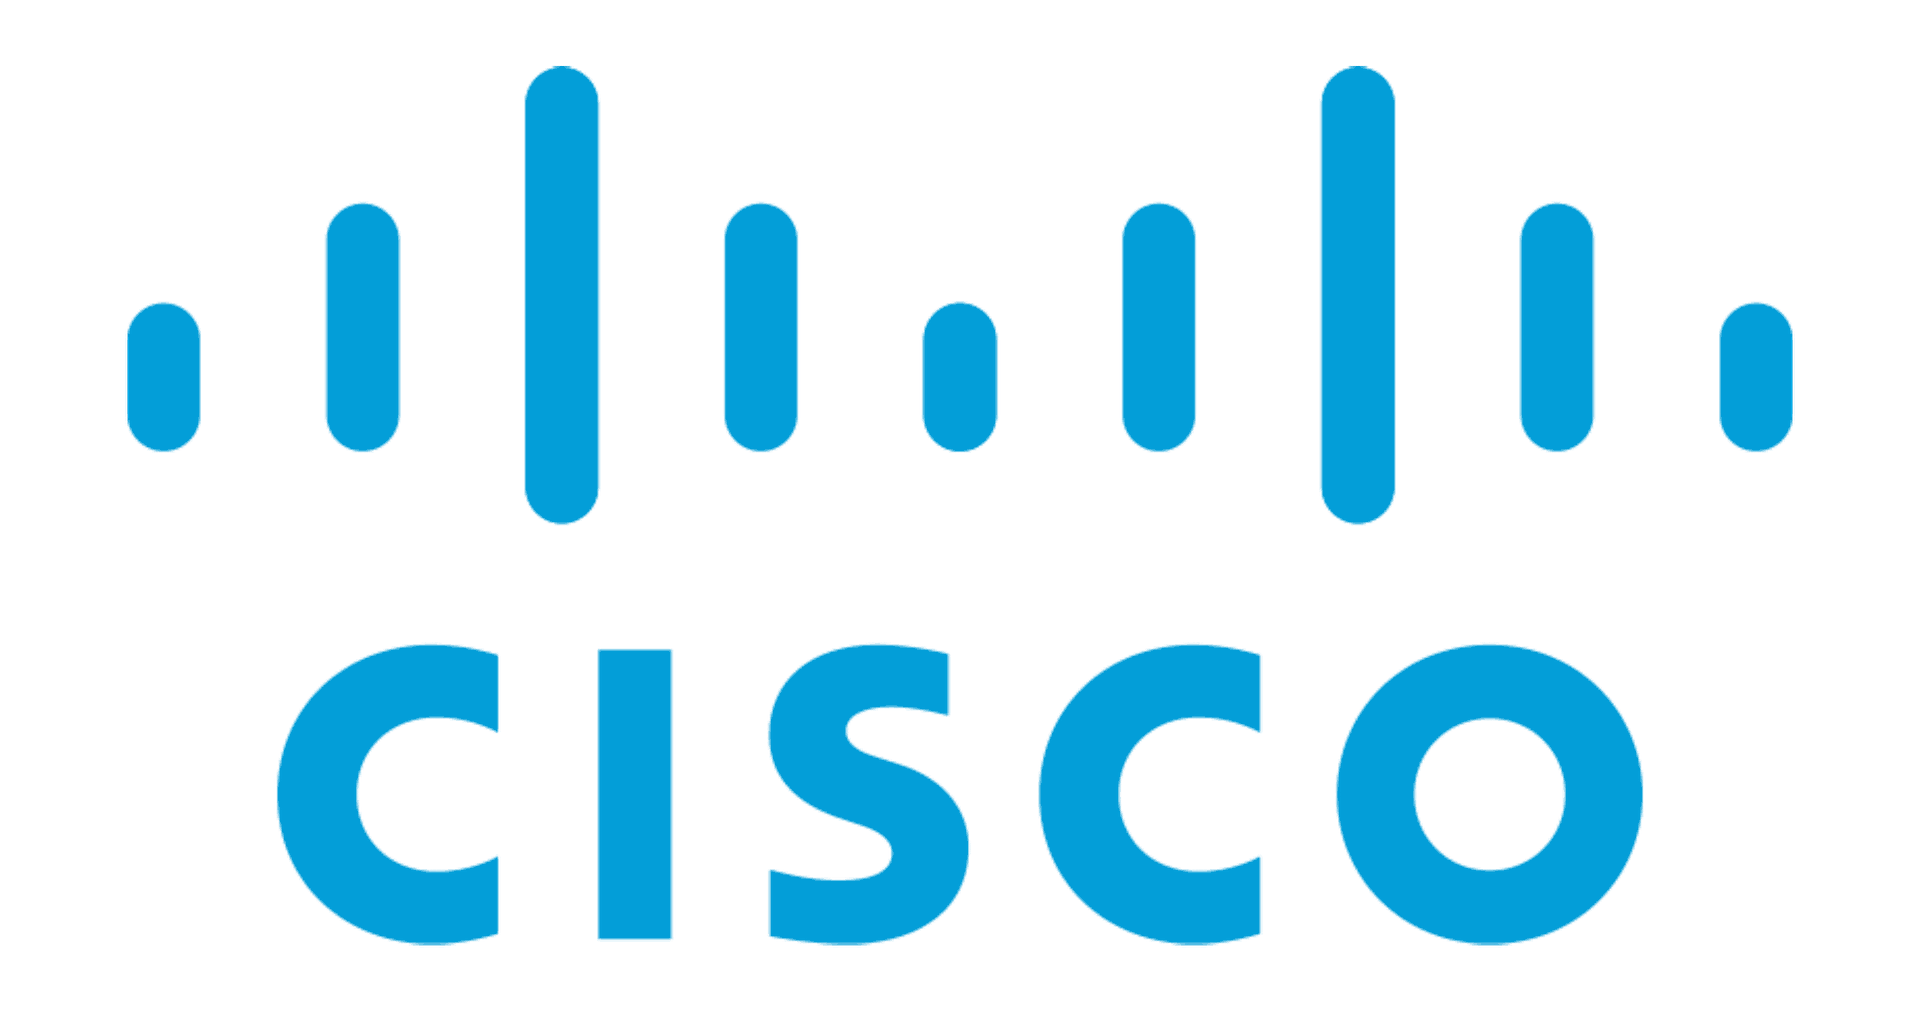 Brand: Cisco